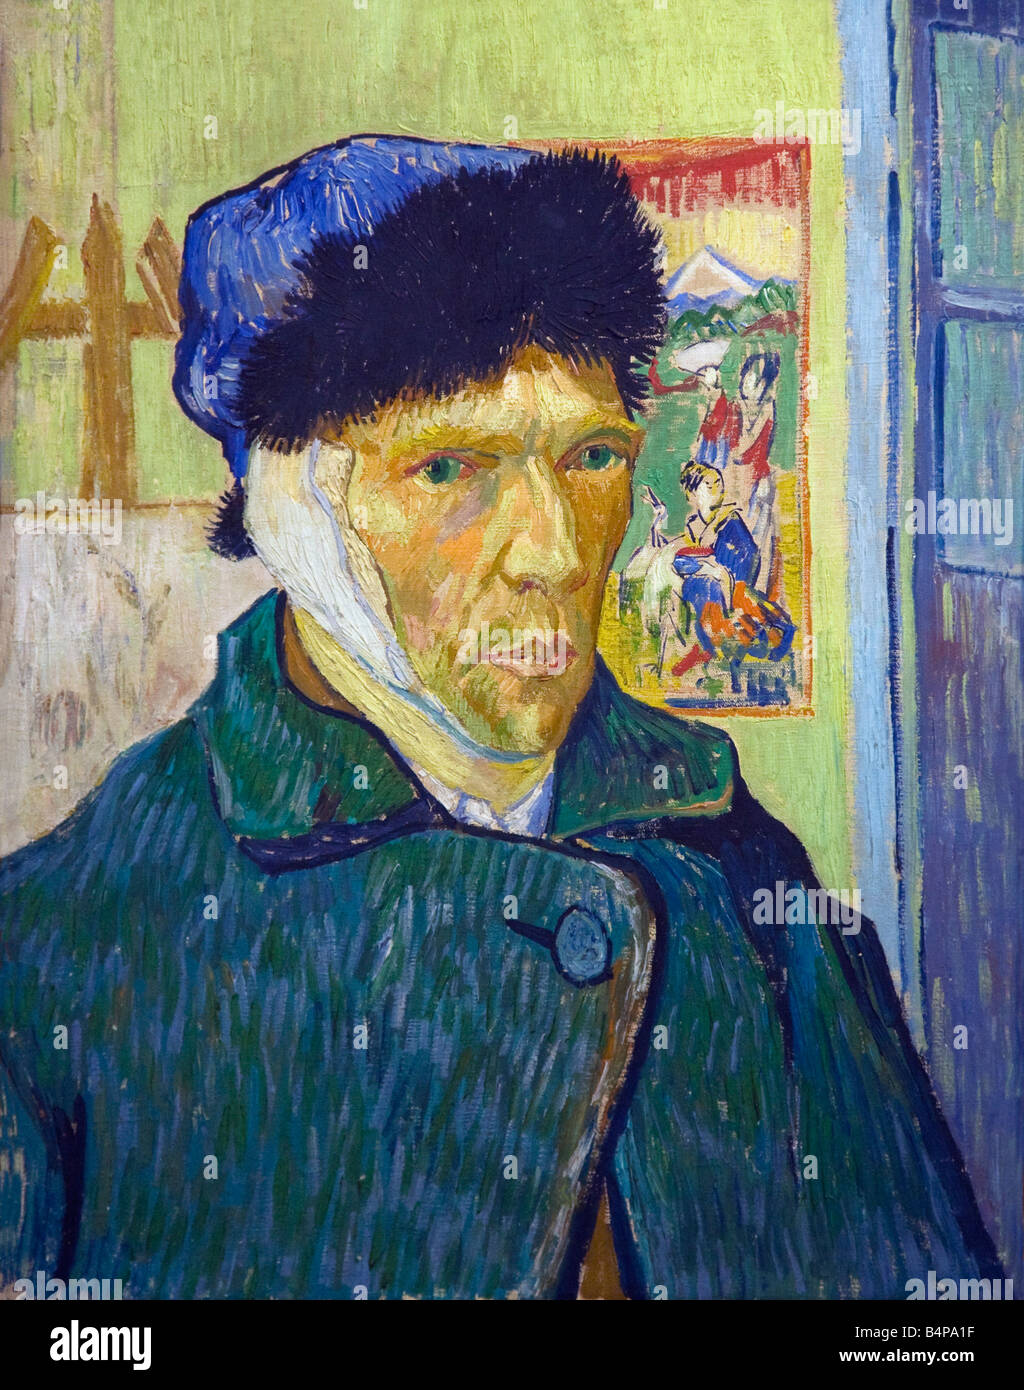 Autorretrato con un oído vendado, Vincent van Gogh, 1889, Courtauld Institute Gallery, Somerset House, Londres, Inglaterra, Reino Unido Foto de stock